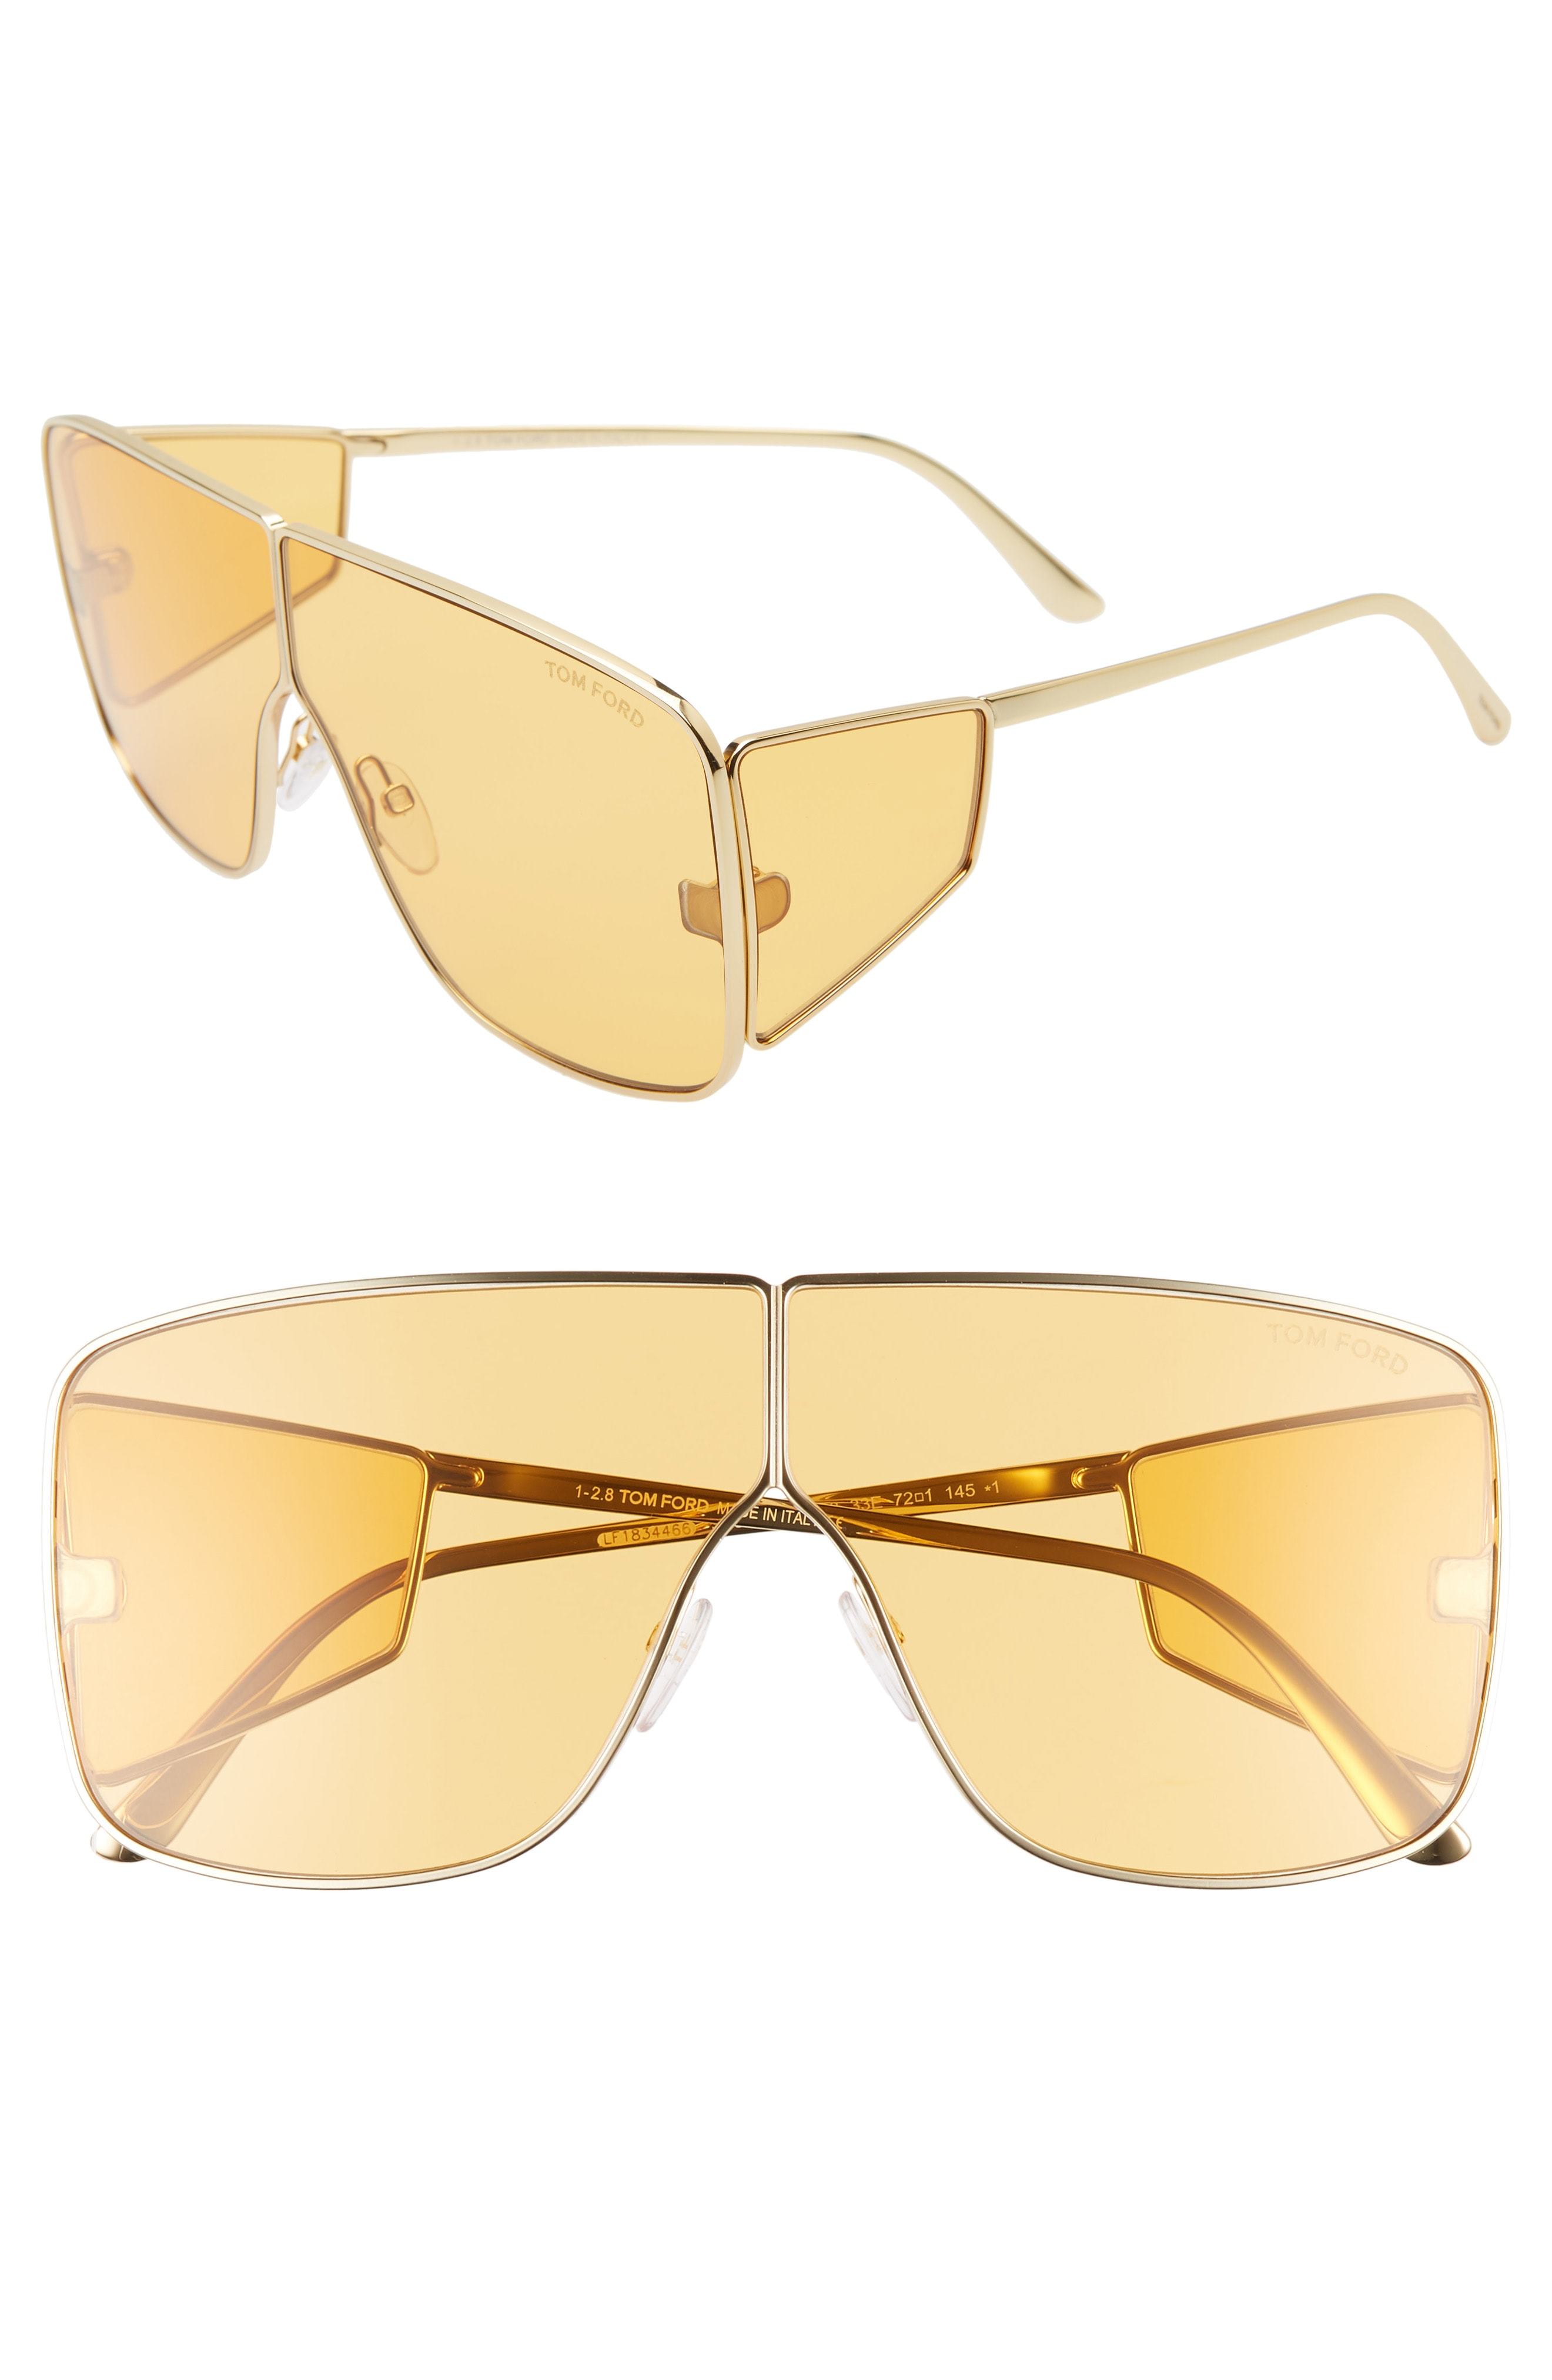 Forbedre Afhængig Sammenhængende Tom Ford Spector 72mm Shield Sunglasses, $525 | Nordstrom | Lookastic